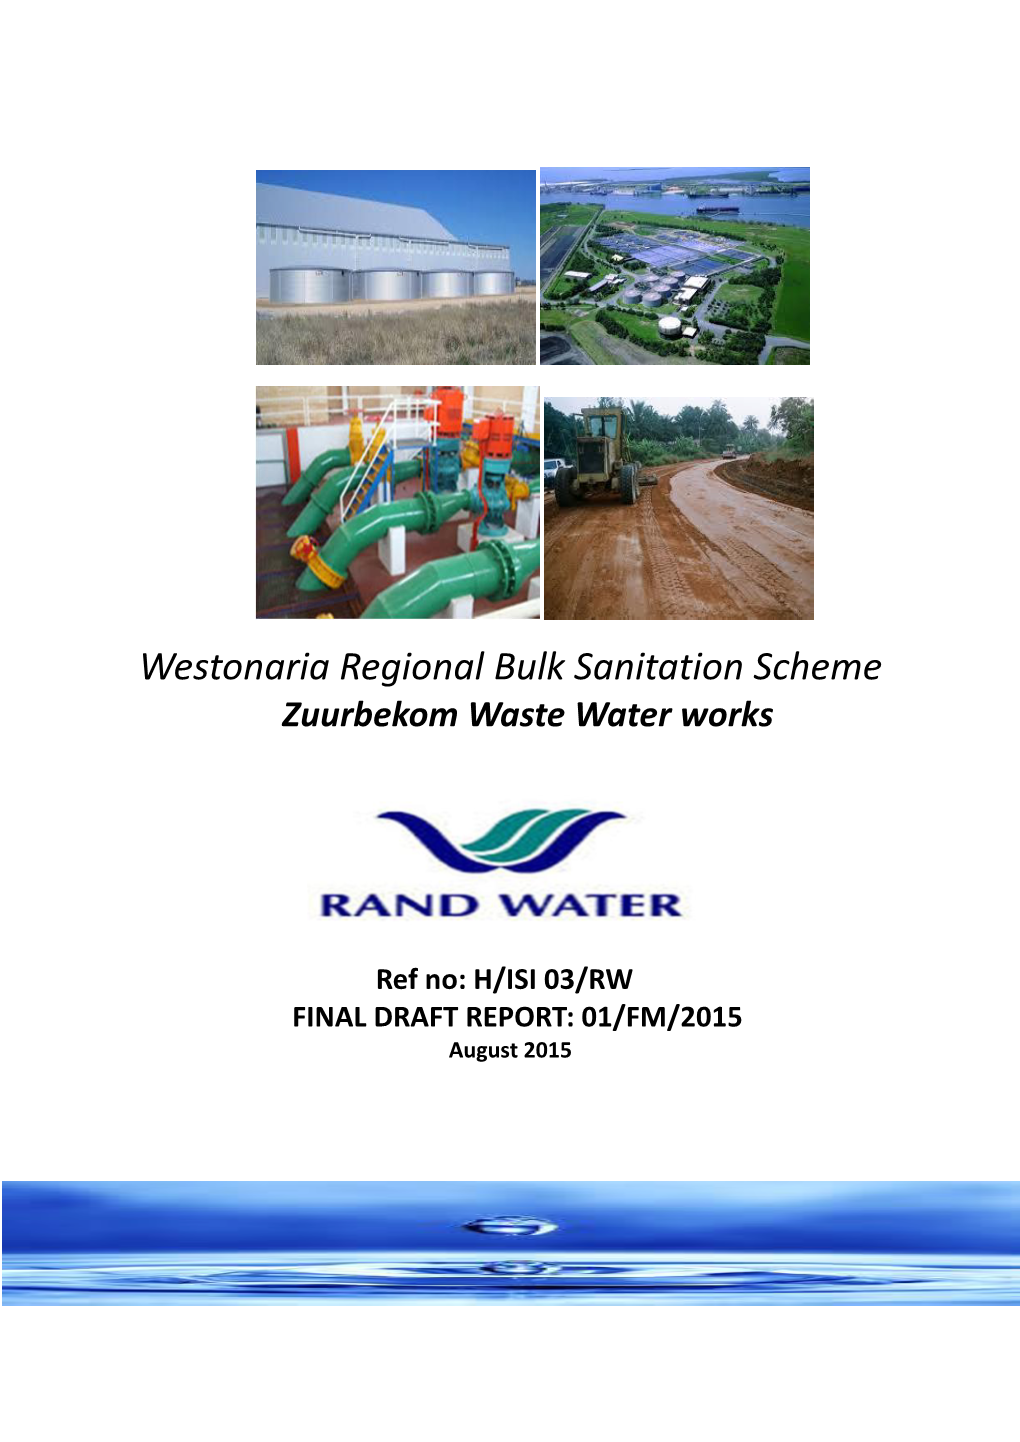 Westonaria Regional Bulk Sanitation Scheme Zuurbekom Waste Water Works